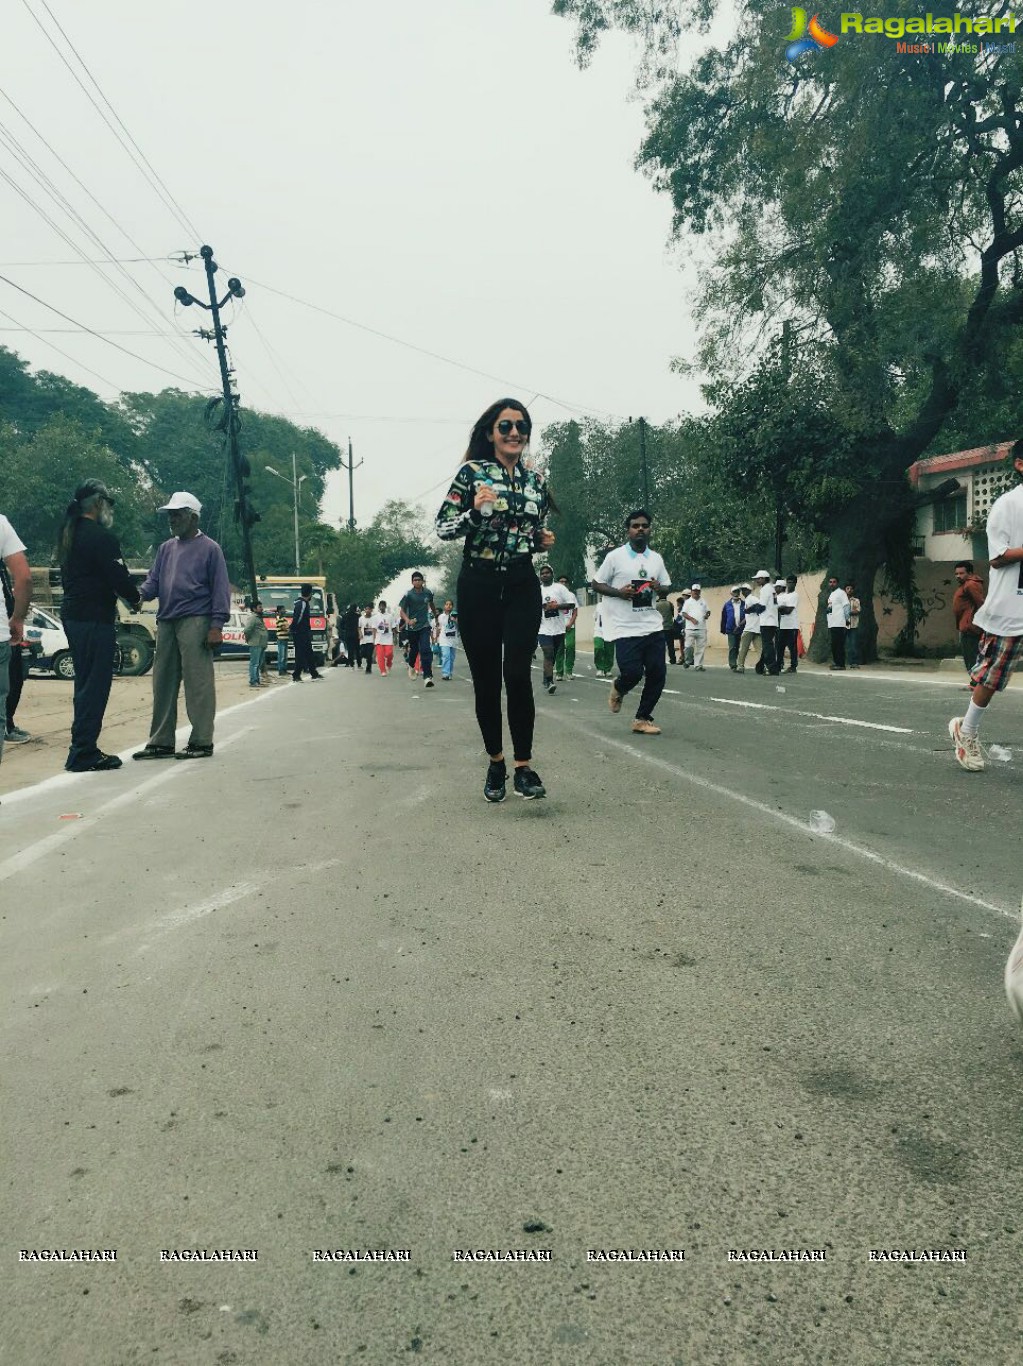 Sonia Mann joined Mini Marathon - 5k Run for Clean India